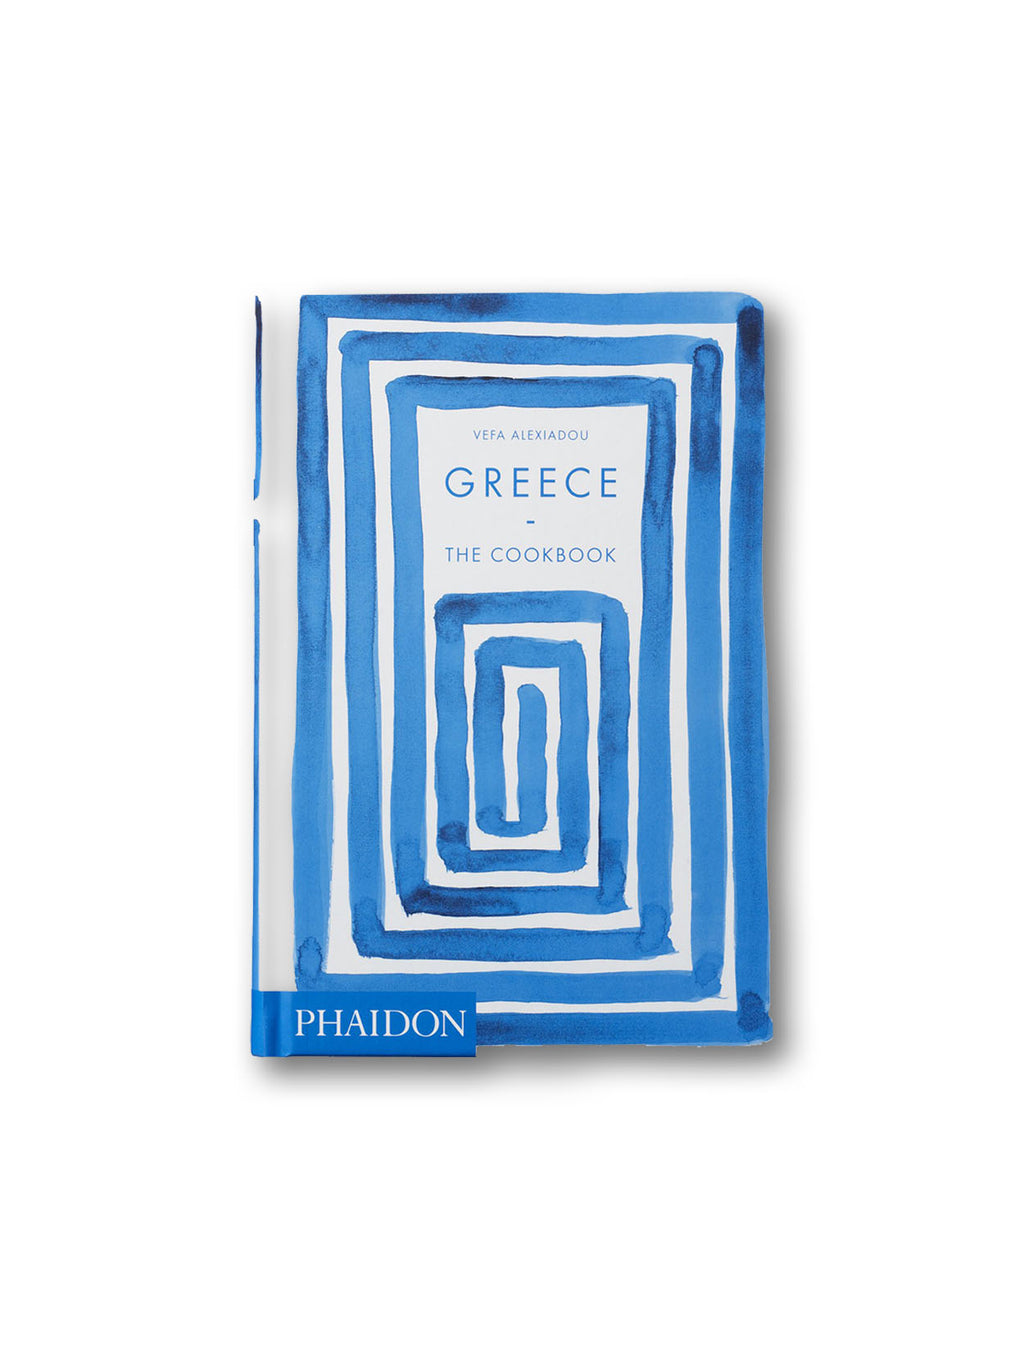 Greece : The Cookbook